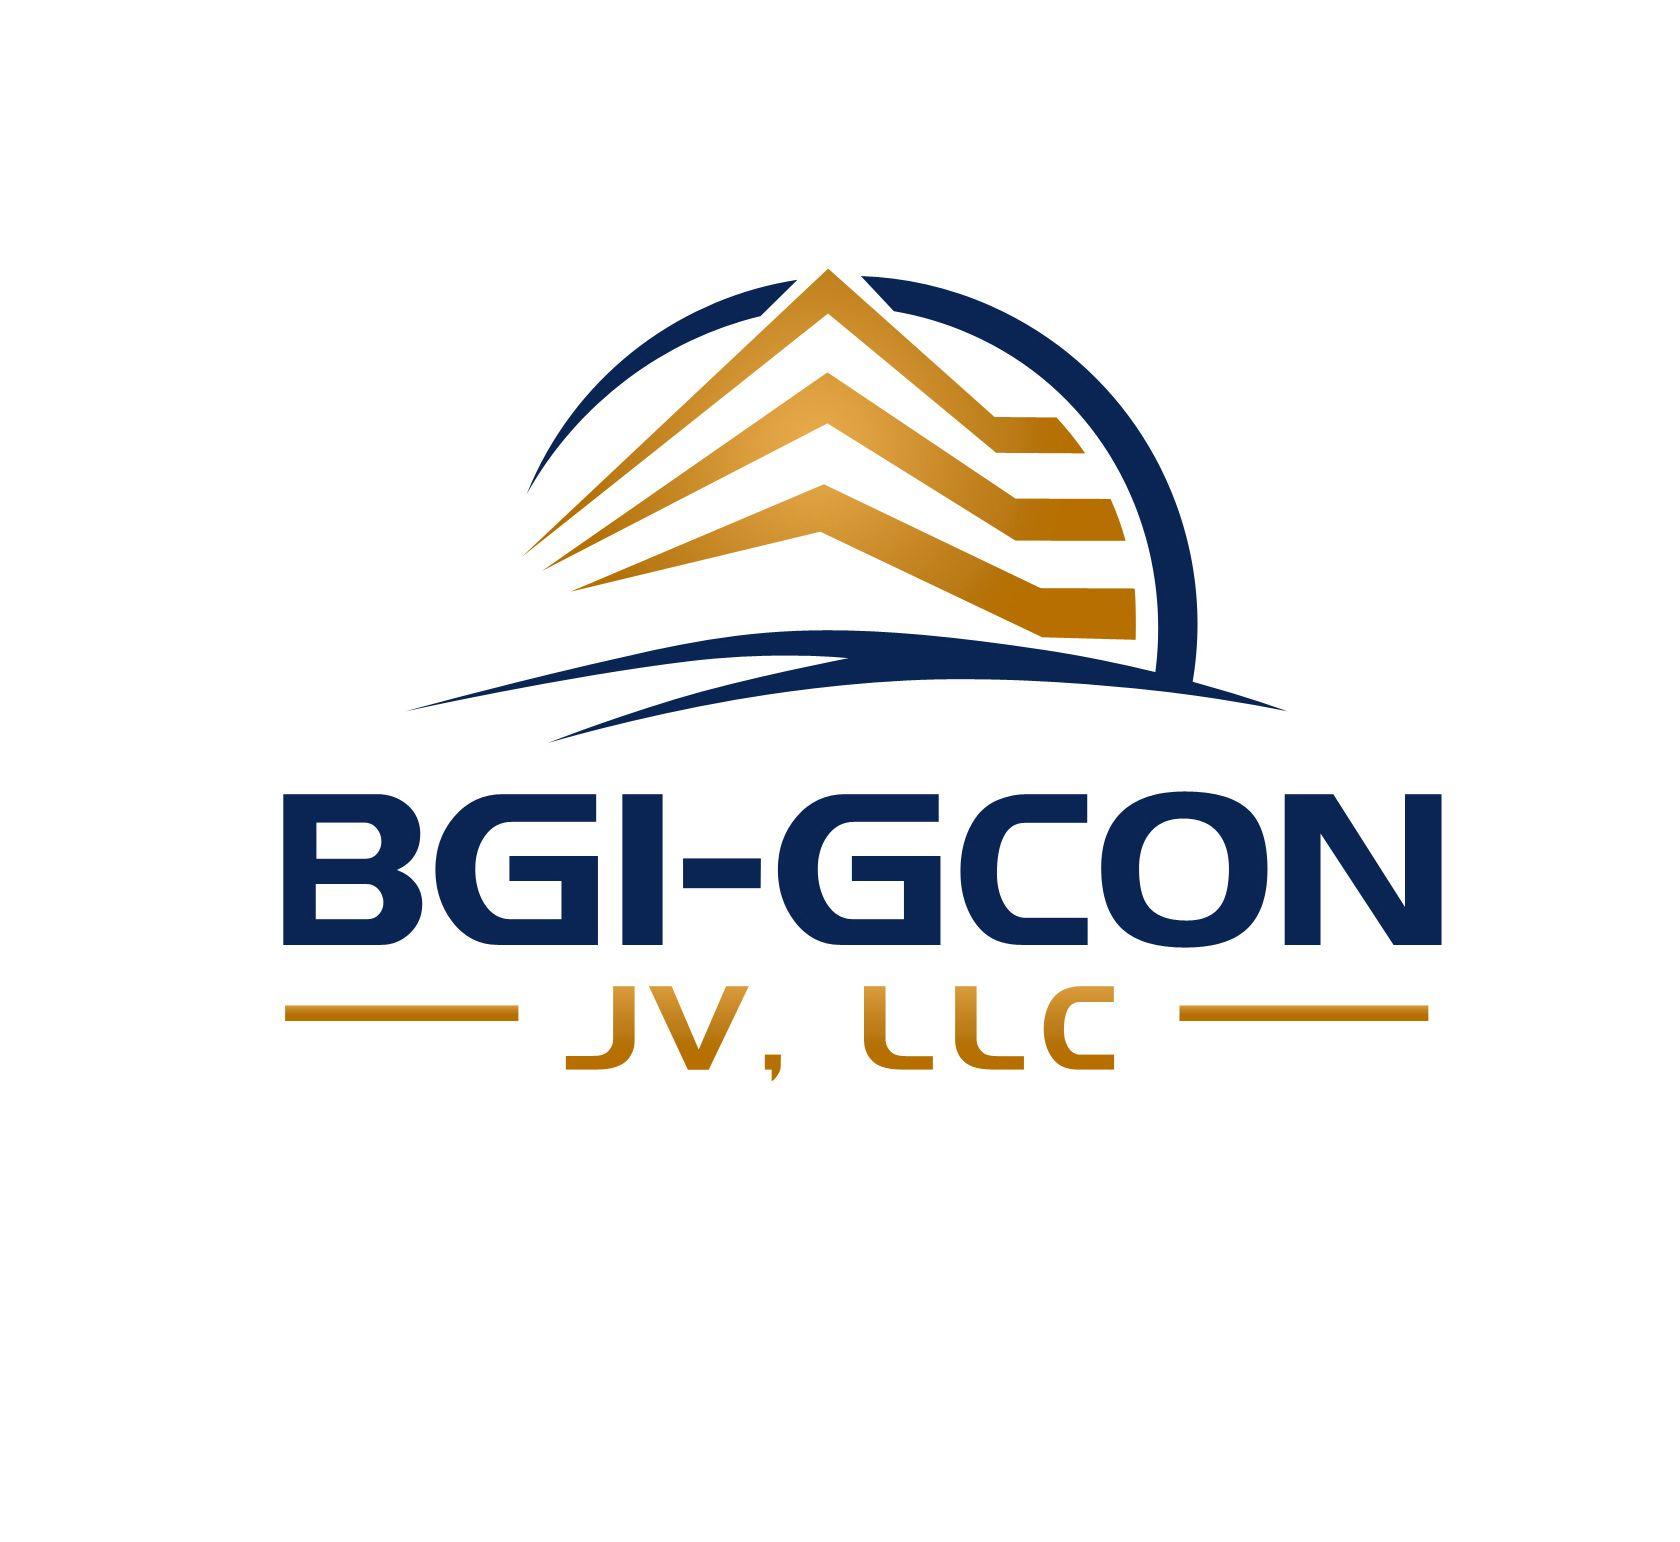 Gcon Logo - Construction Services - Banda Group International